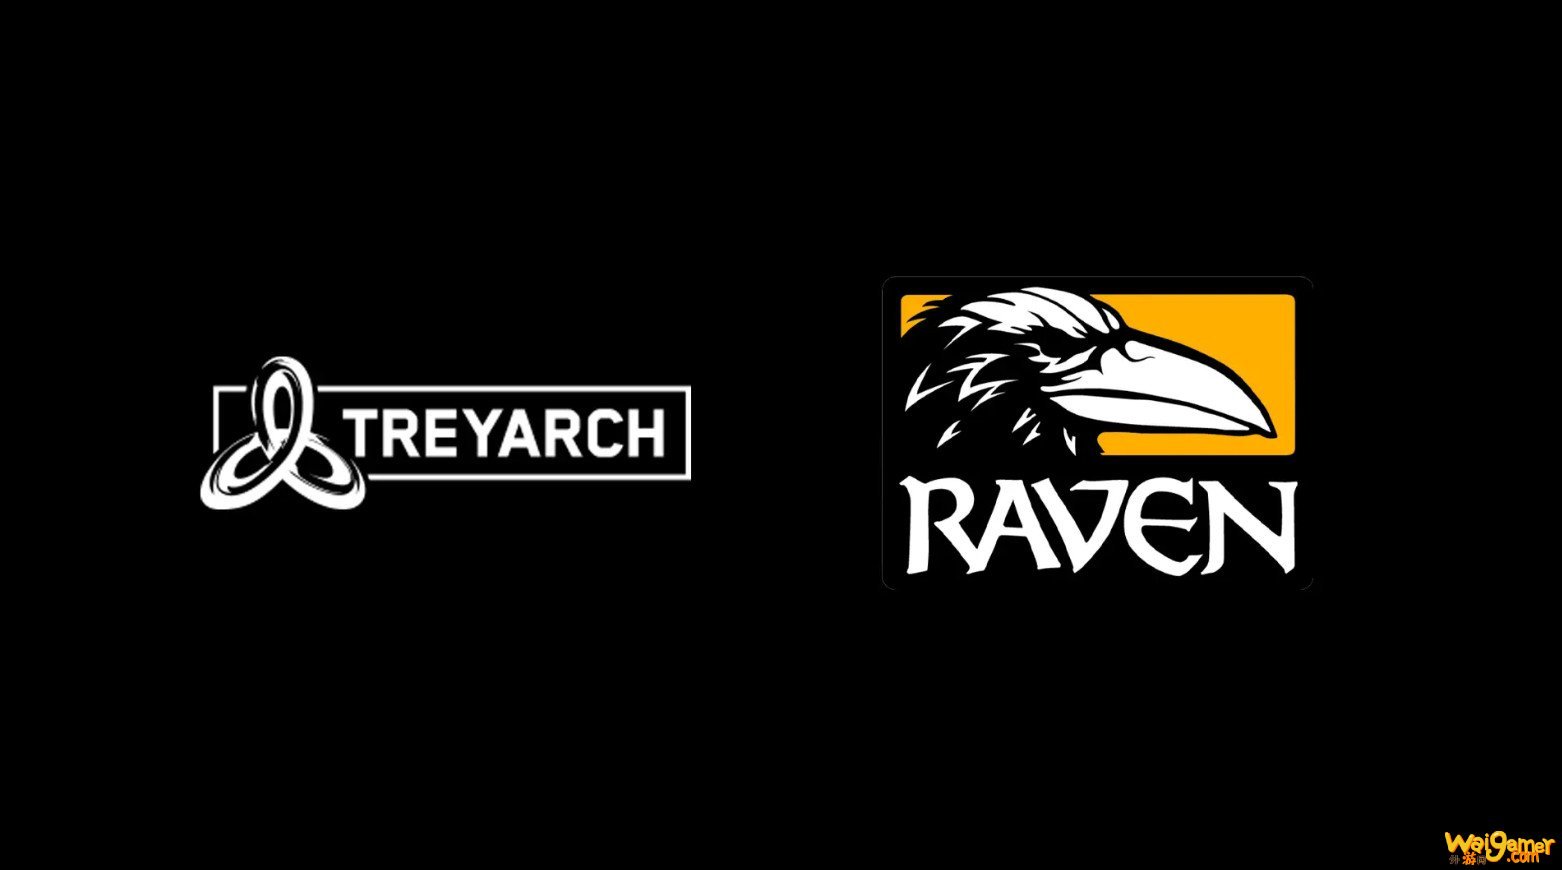 《使命召唤17》由T组和Raven联合开发 将很快正式公布